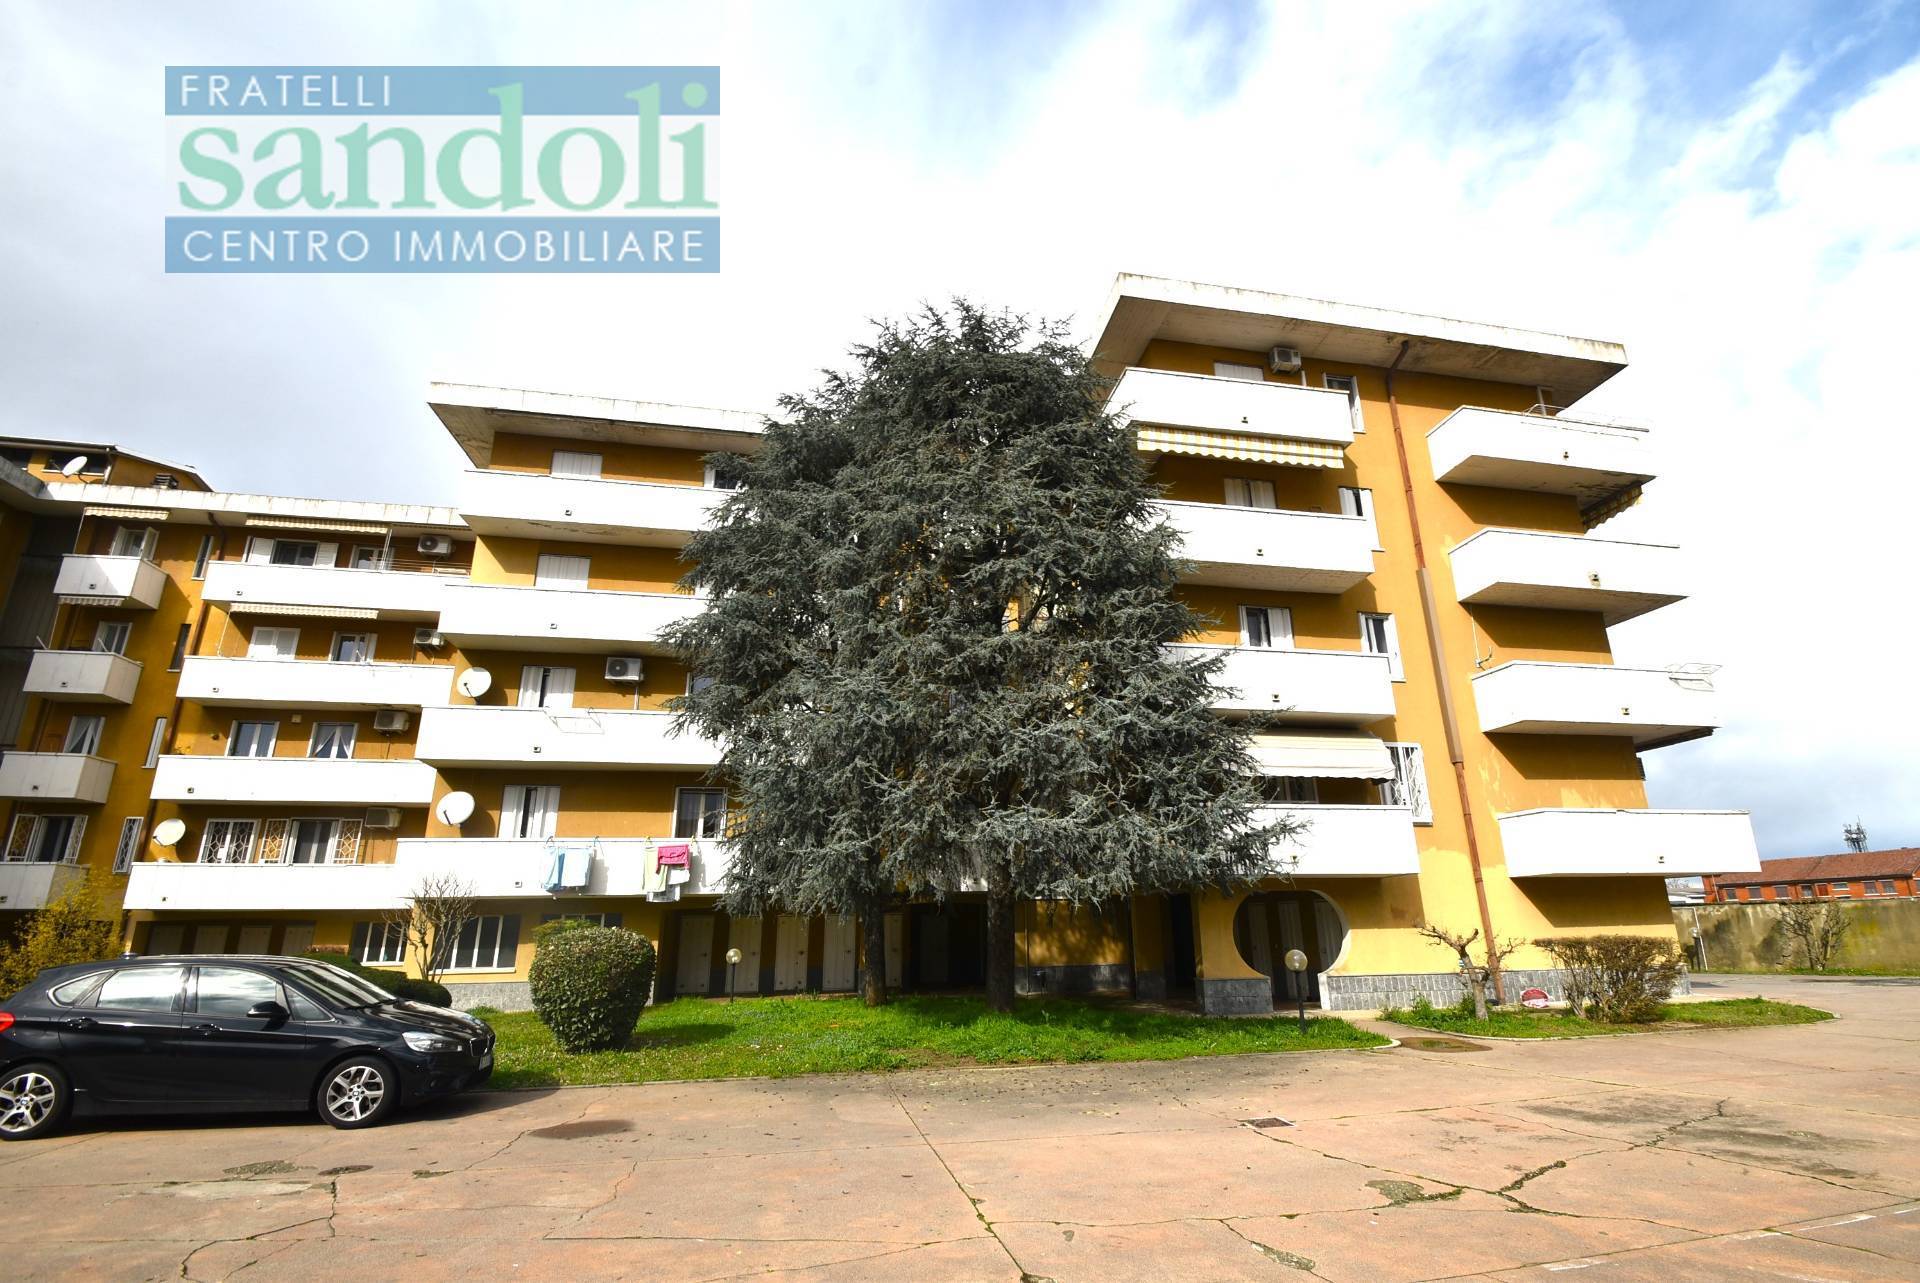 Appartamento in vendita a Vercelli, 3 locali, zona Località: Canad?, prezzo € 120.000 | PortaleAgenzieImmobiliari.it